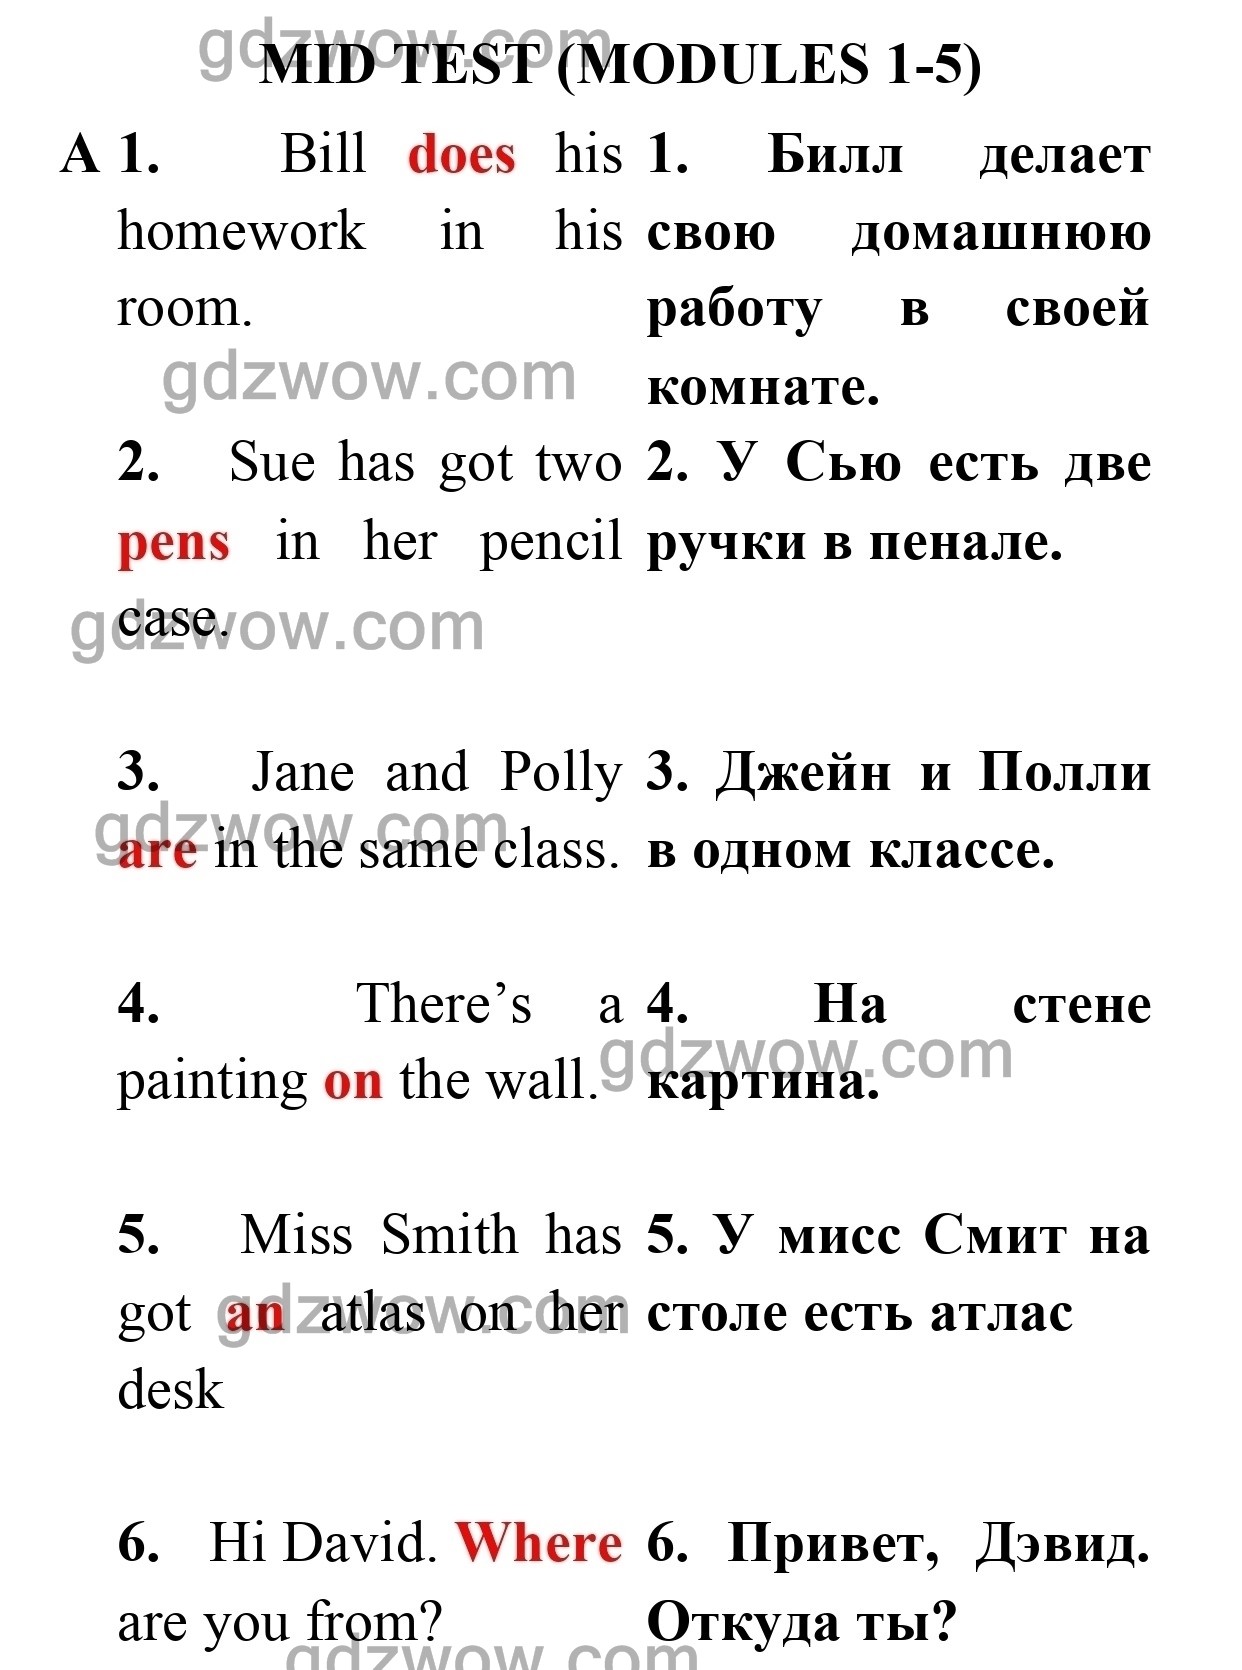 Mid test — ГДЗ по Английскому языку для 5 класса Test Booklet Spotlight Ваулина, Дули Дженни, Подоляко. Ключи к тестам (решебник) - GDZwow